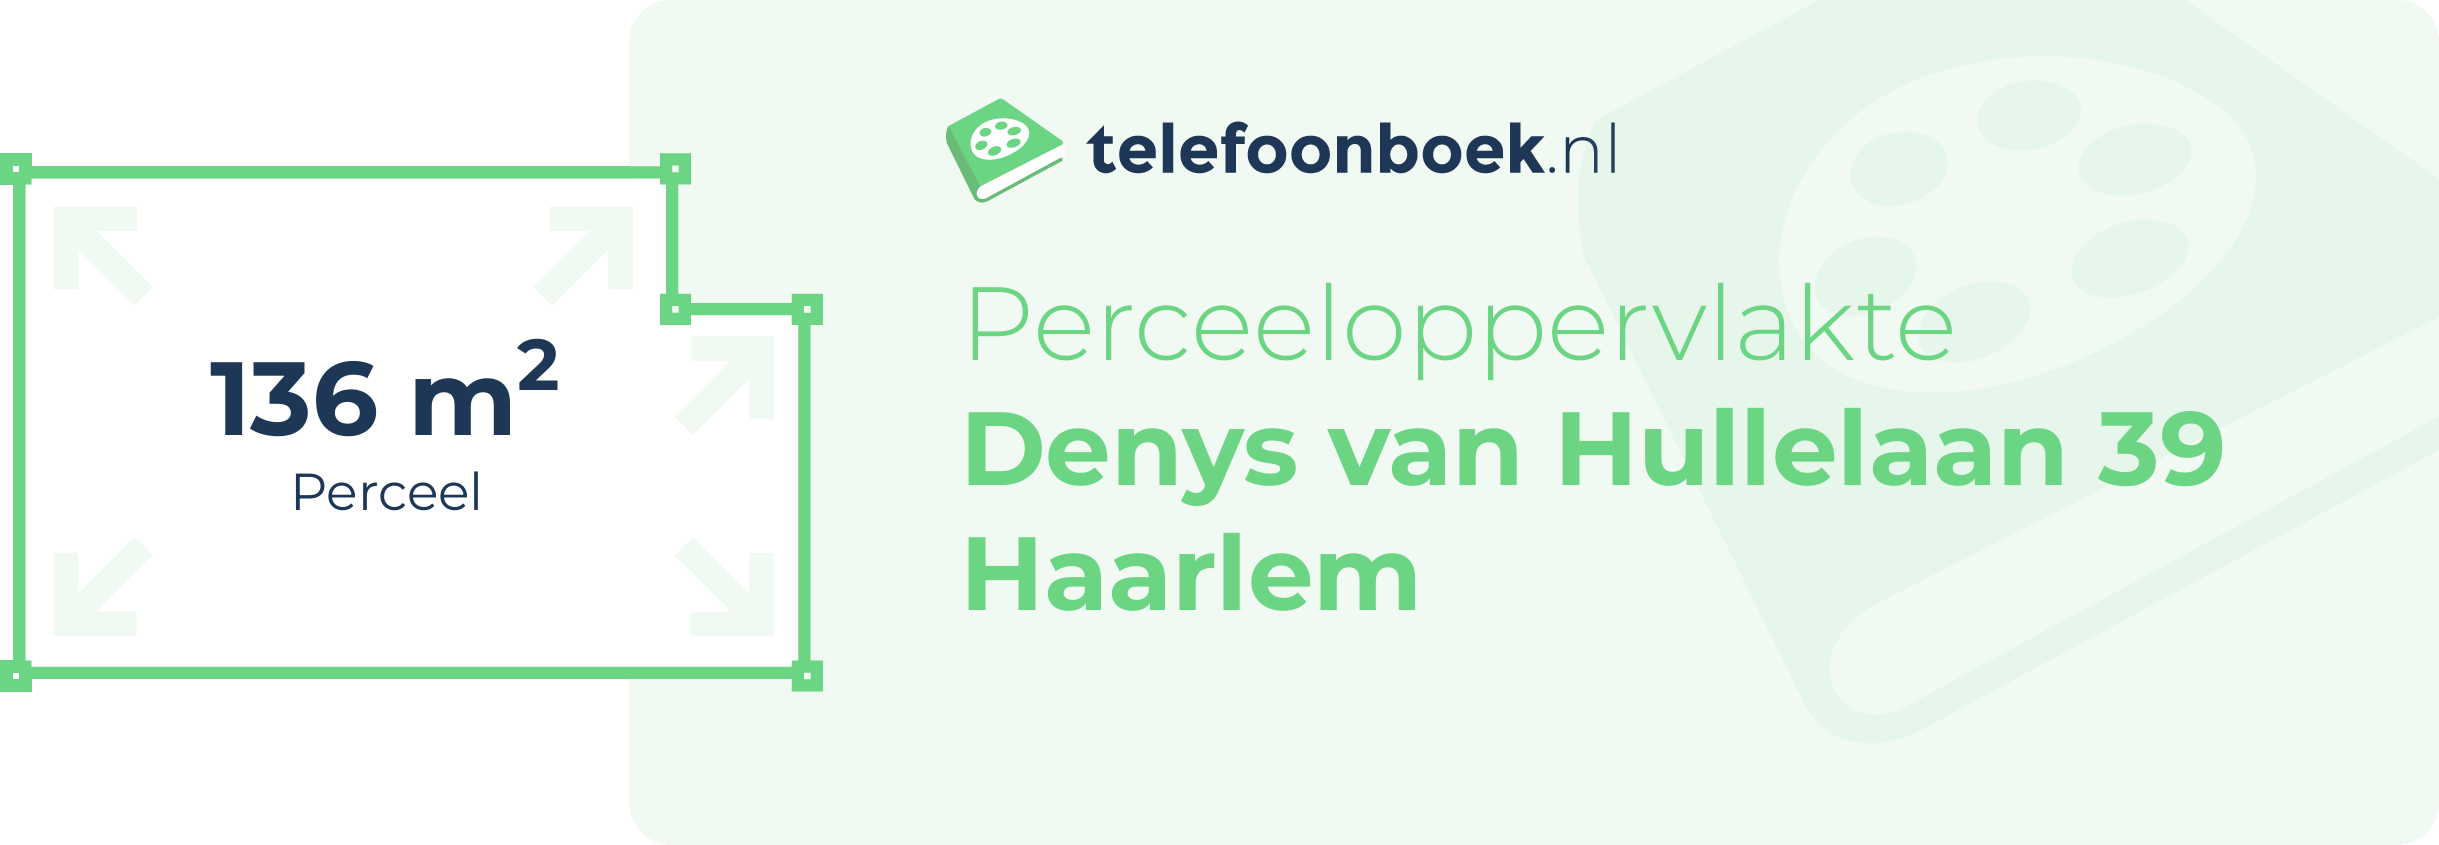 Perceeloppervlakte Denys Van Hullelaan 39 Haarlem